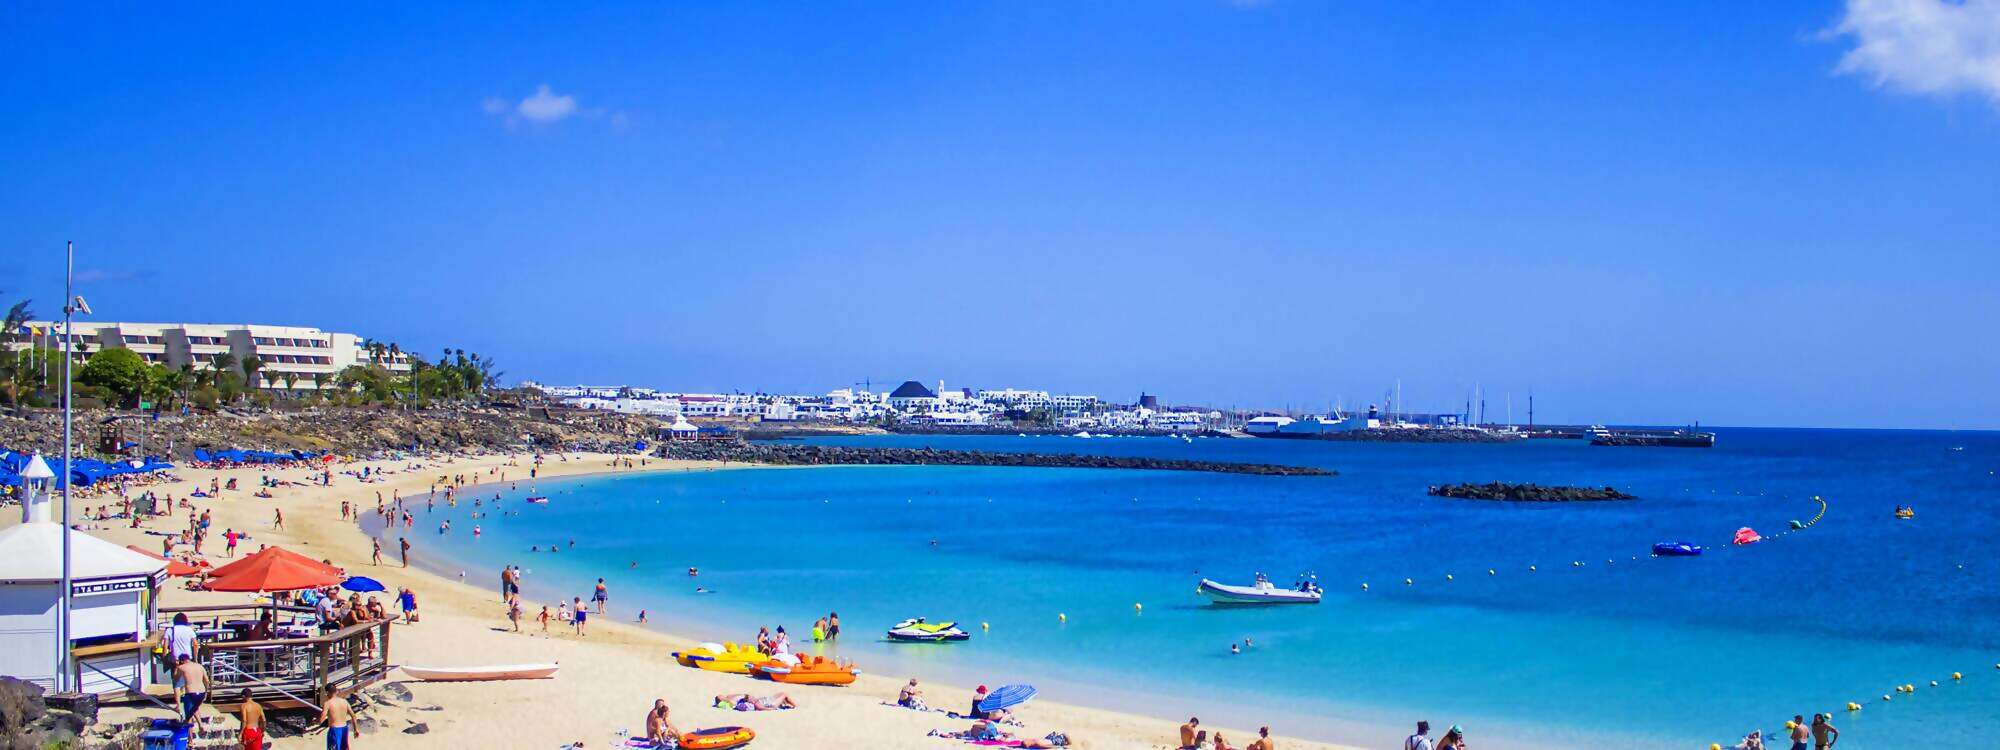 Der Strand Playa Blanca auf Lanzarote